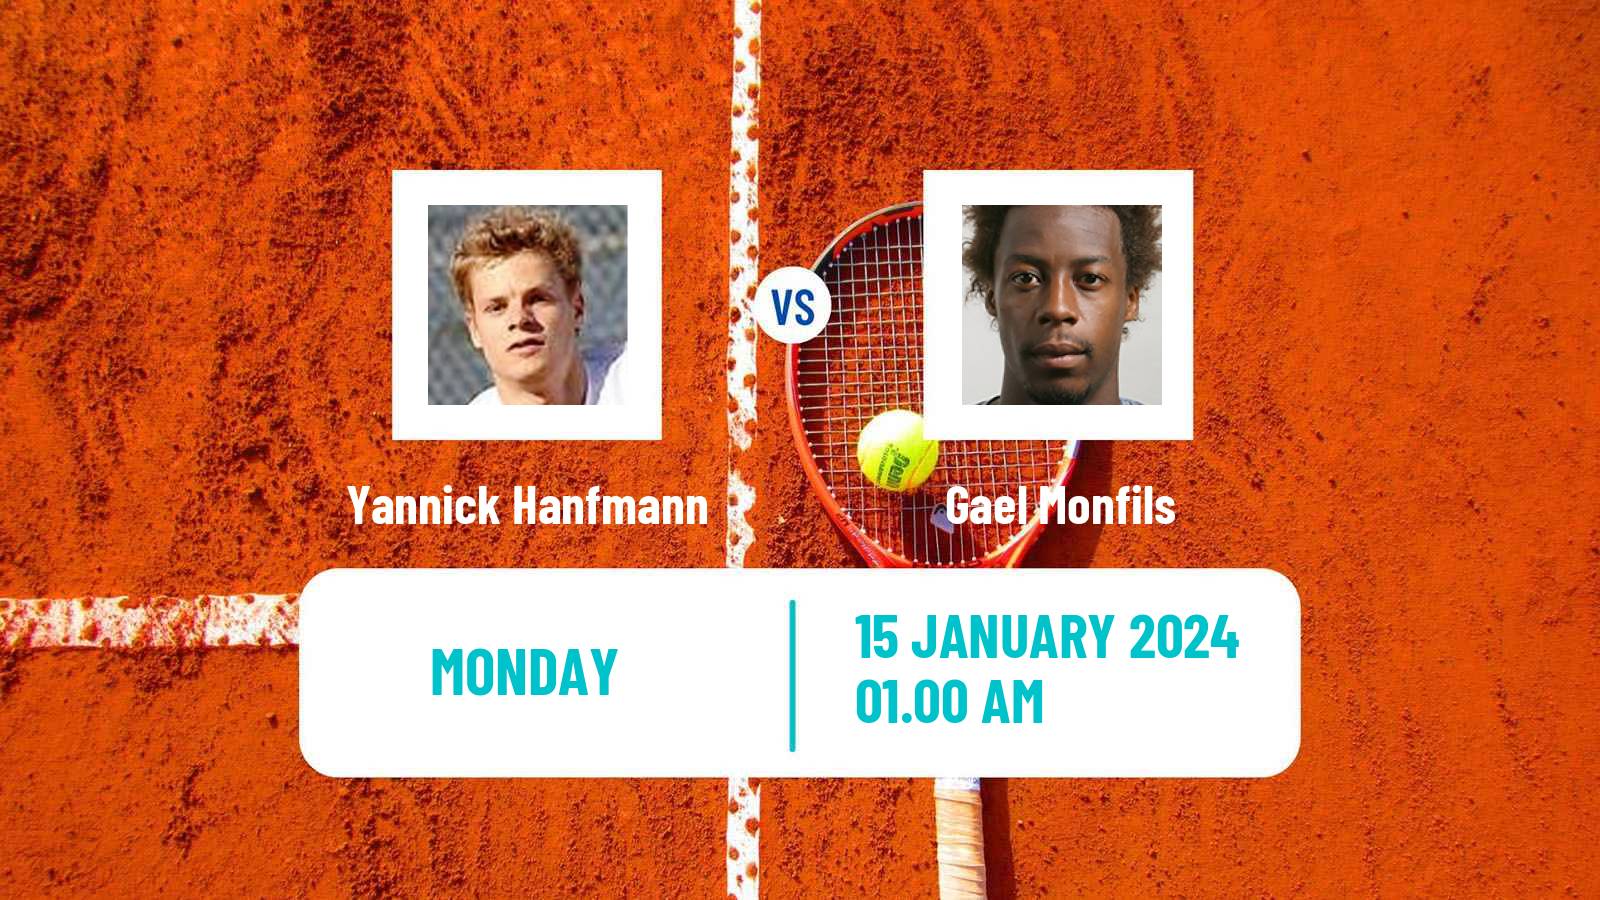 Tennis ATP Australian Open Yannick Hanfmann - Gael Monfils